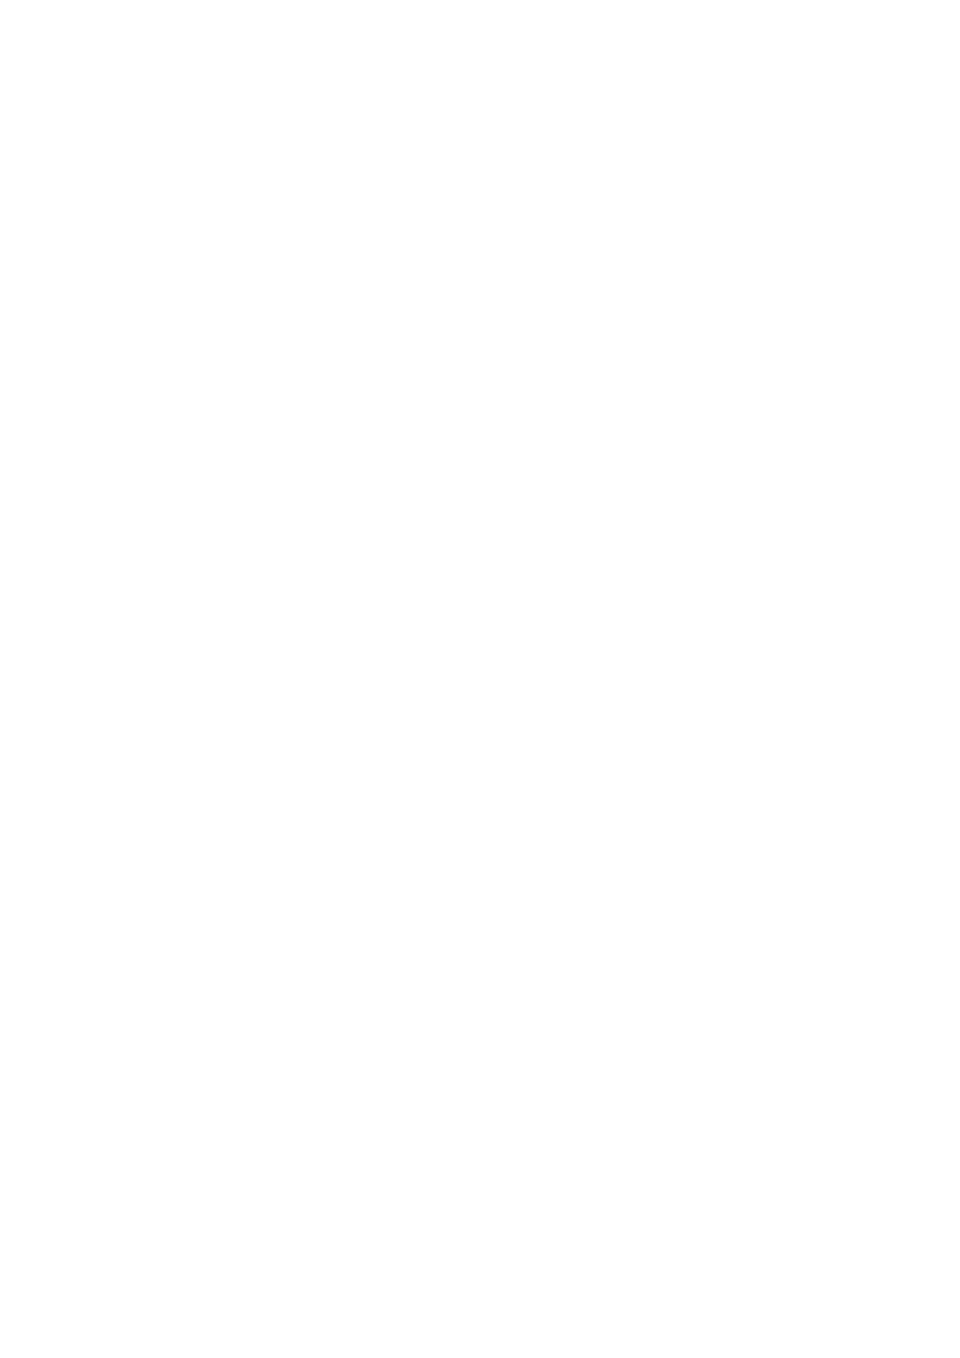 utredning om videregående opplæring i Finnmark RS 6/2012 Høring - innføring av valgfag og forskriftsfesting av tid til elevrådsrelatert arbeid PS 14/2012 Sommermusikkfestival 2012 Saksprotokoll